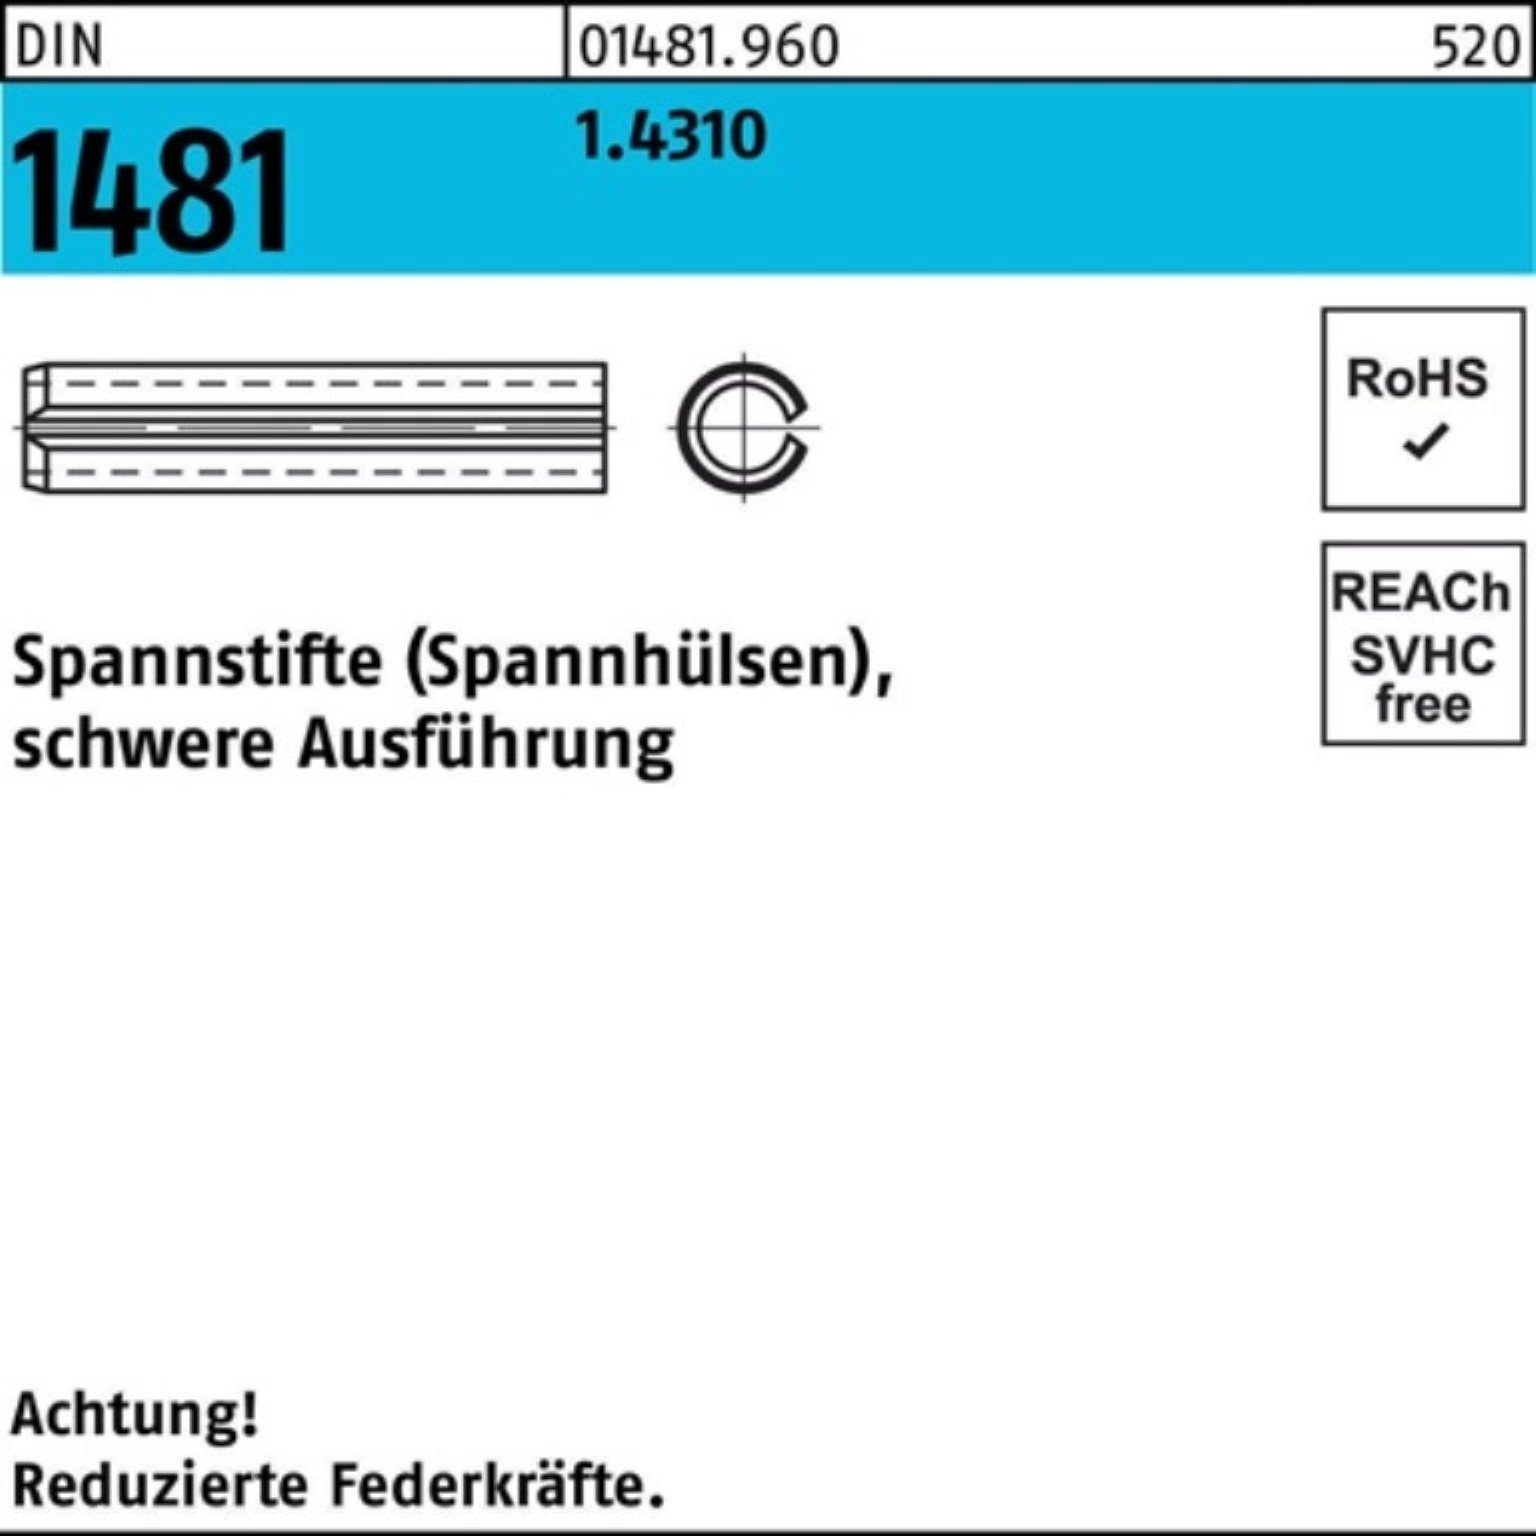 Reyher Spannstift Pack 1.4310 schwere 3x DIN 100er St Ausführung 1481 10 Spannstift 100